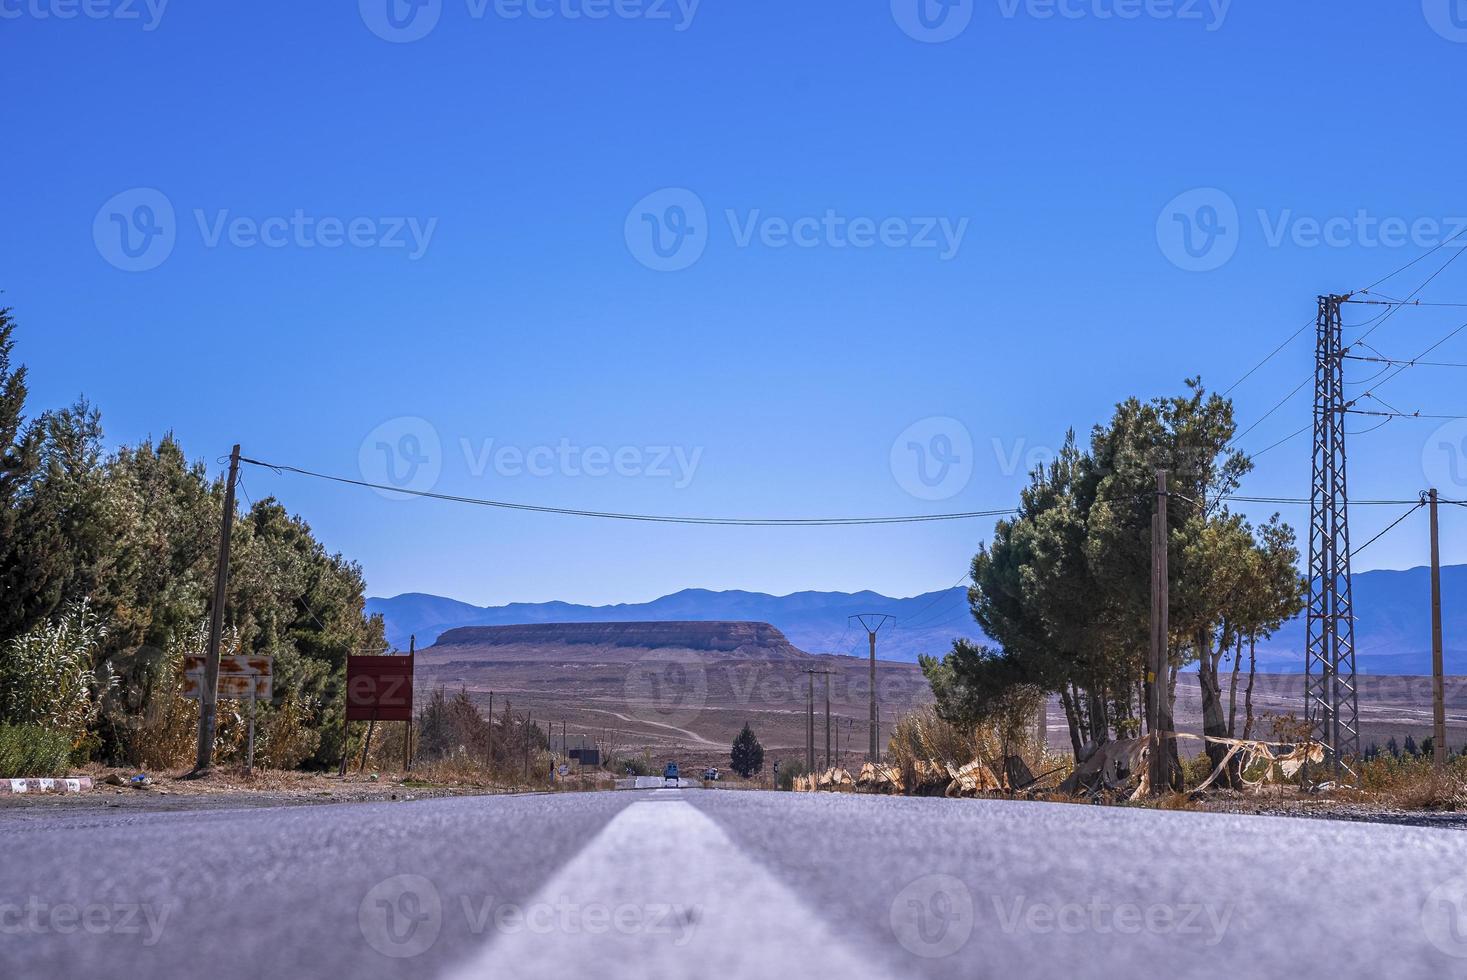 Carretera asfaltada recta con marcas de superficie blanca contra montañas en segundo plano. foto